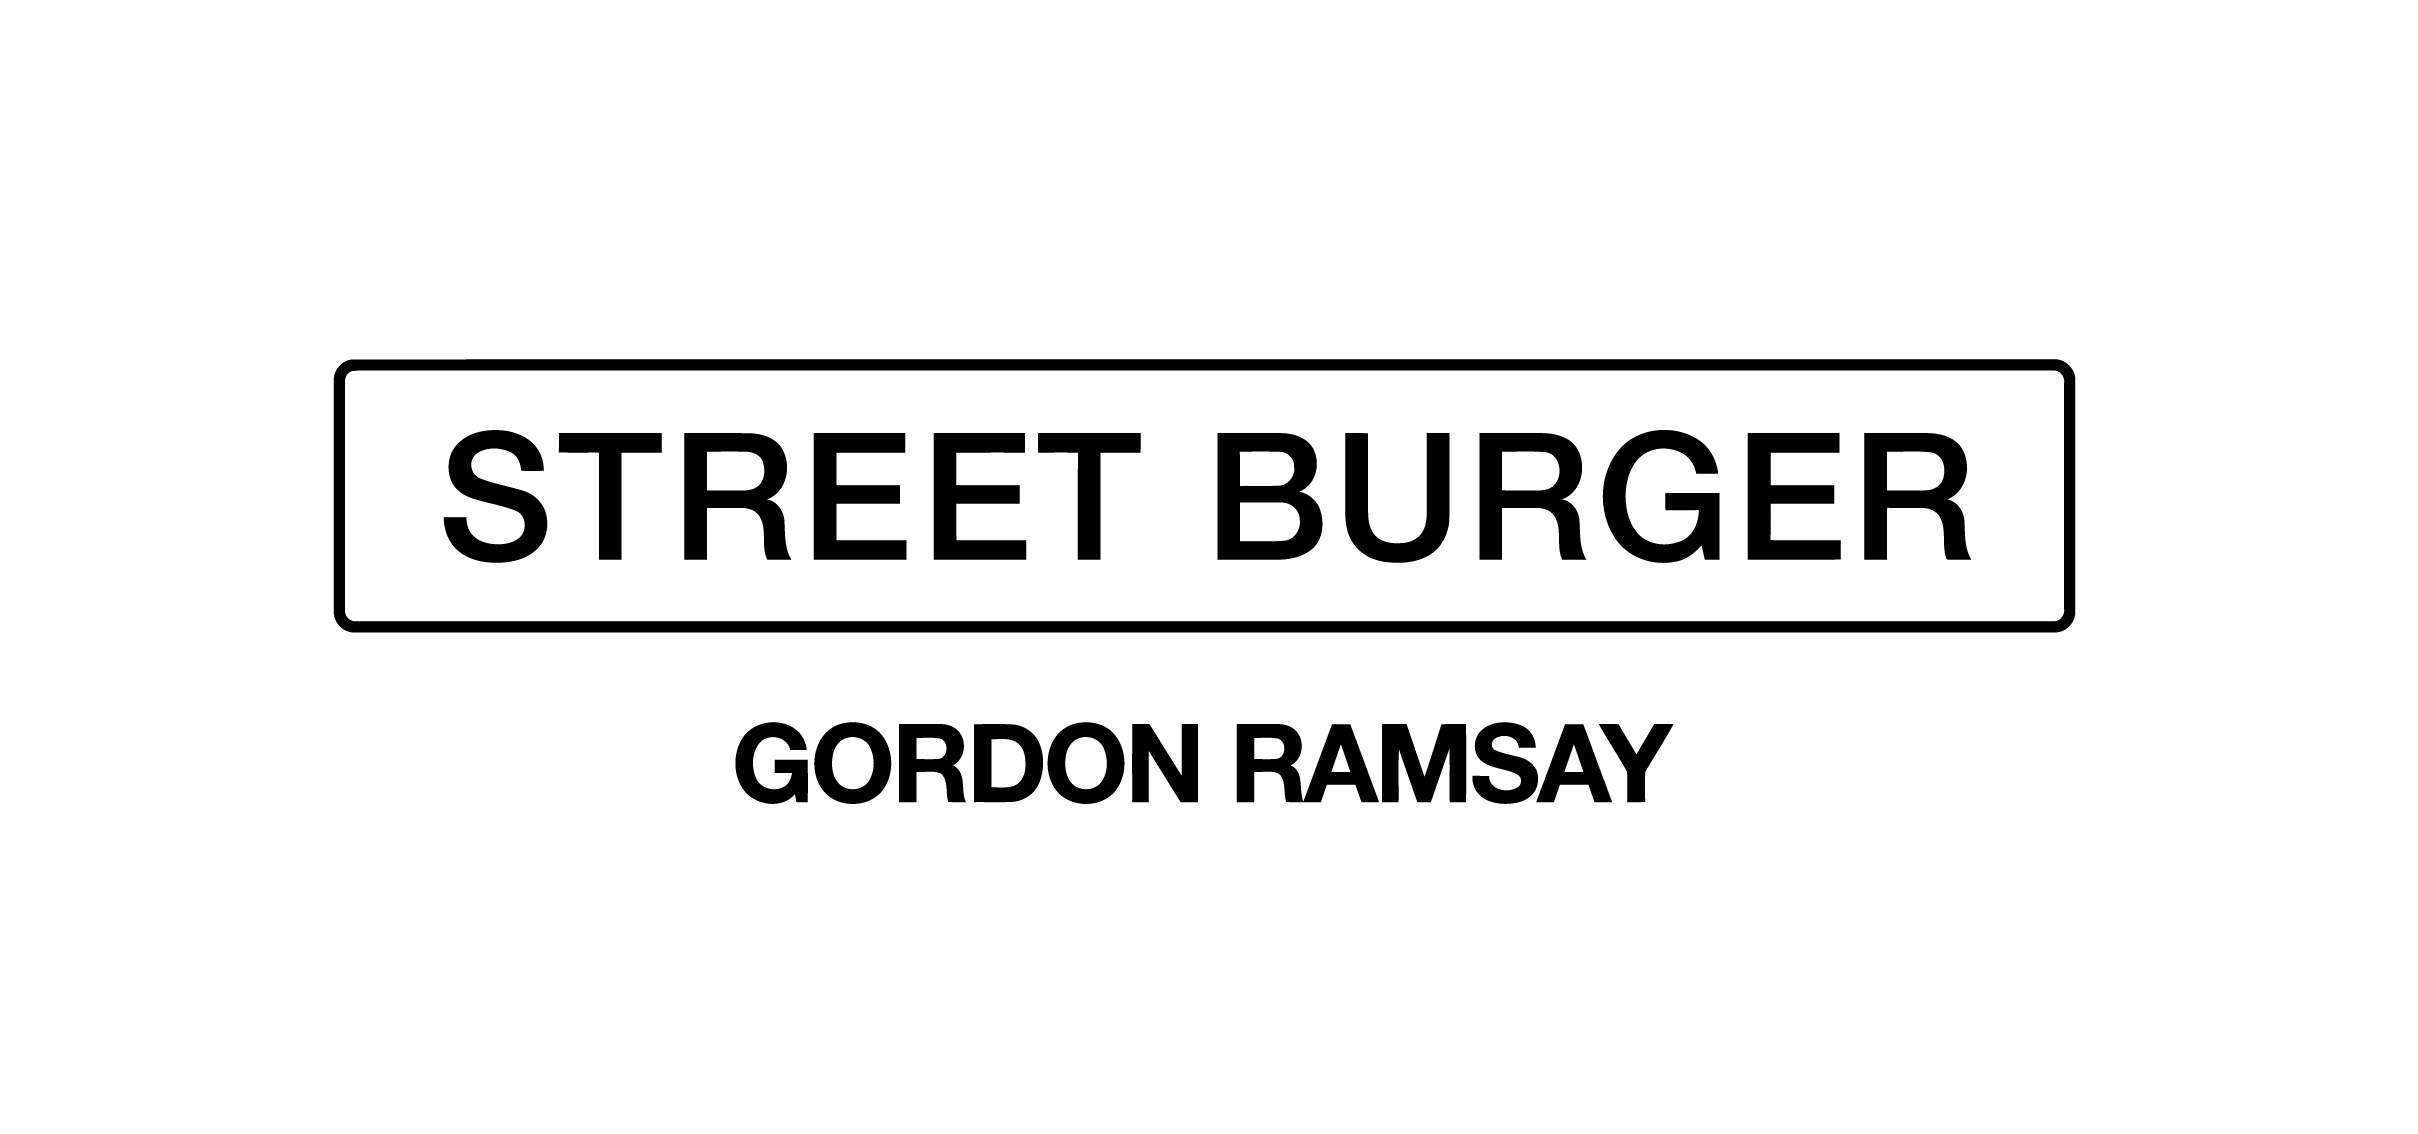 Gordon Ramsay Street Burger logo